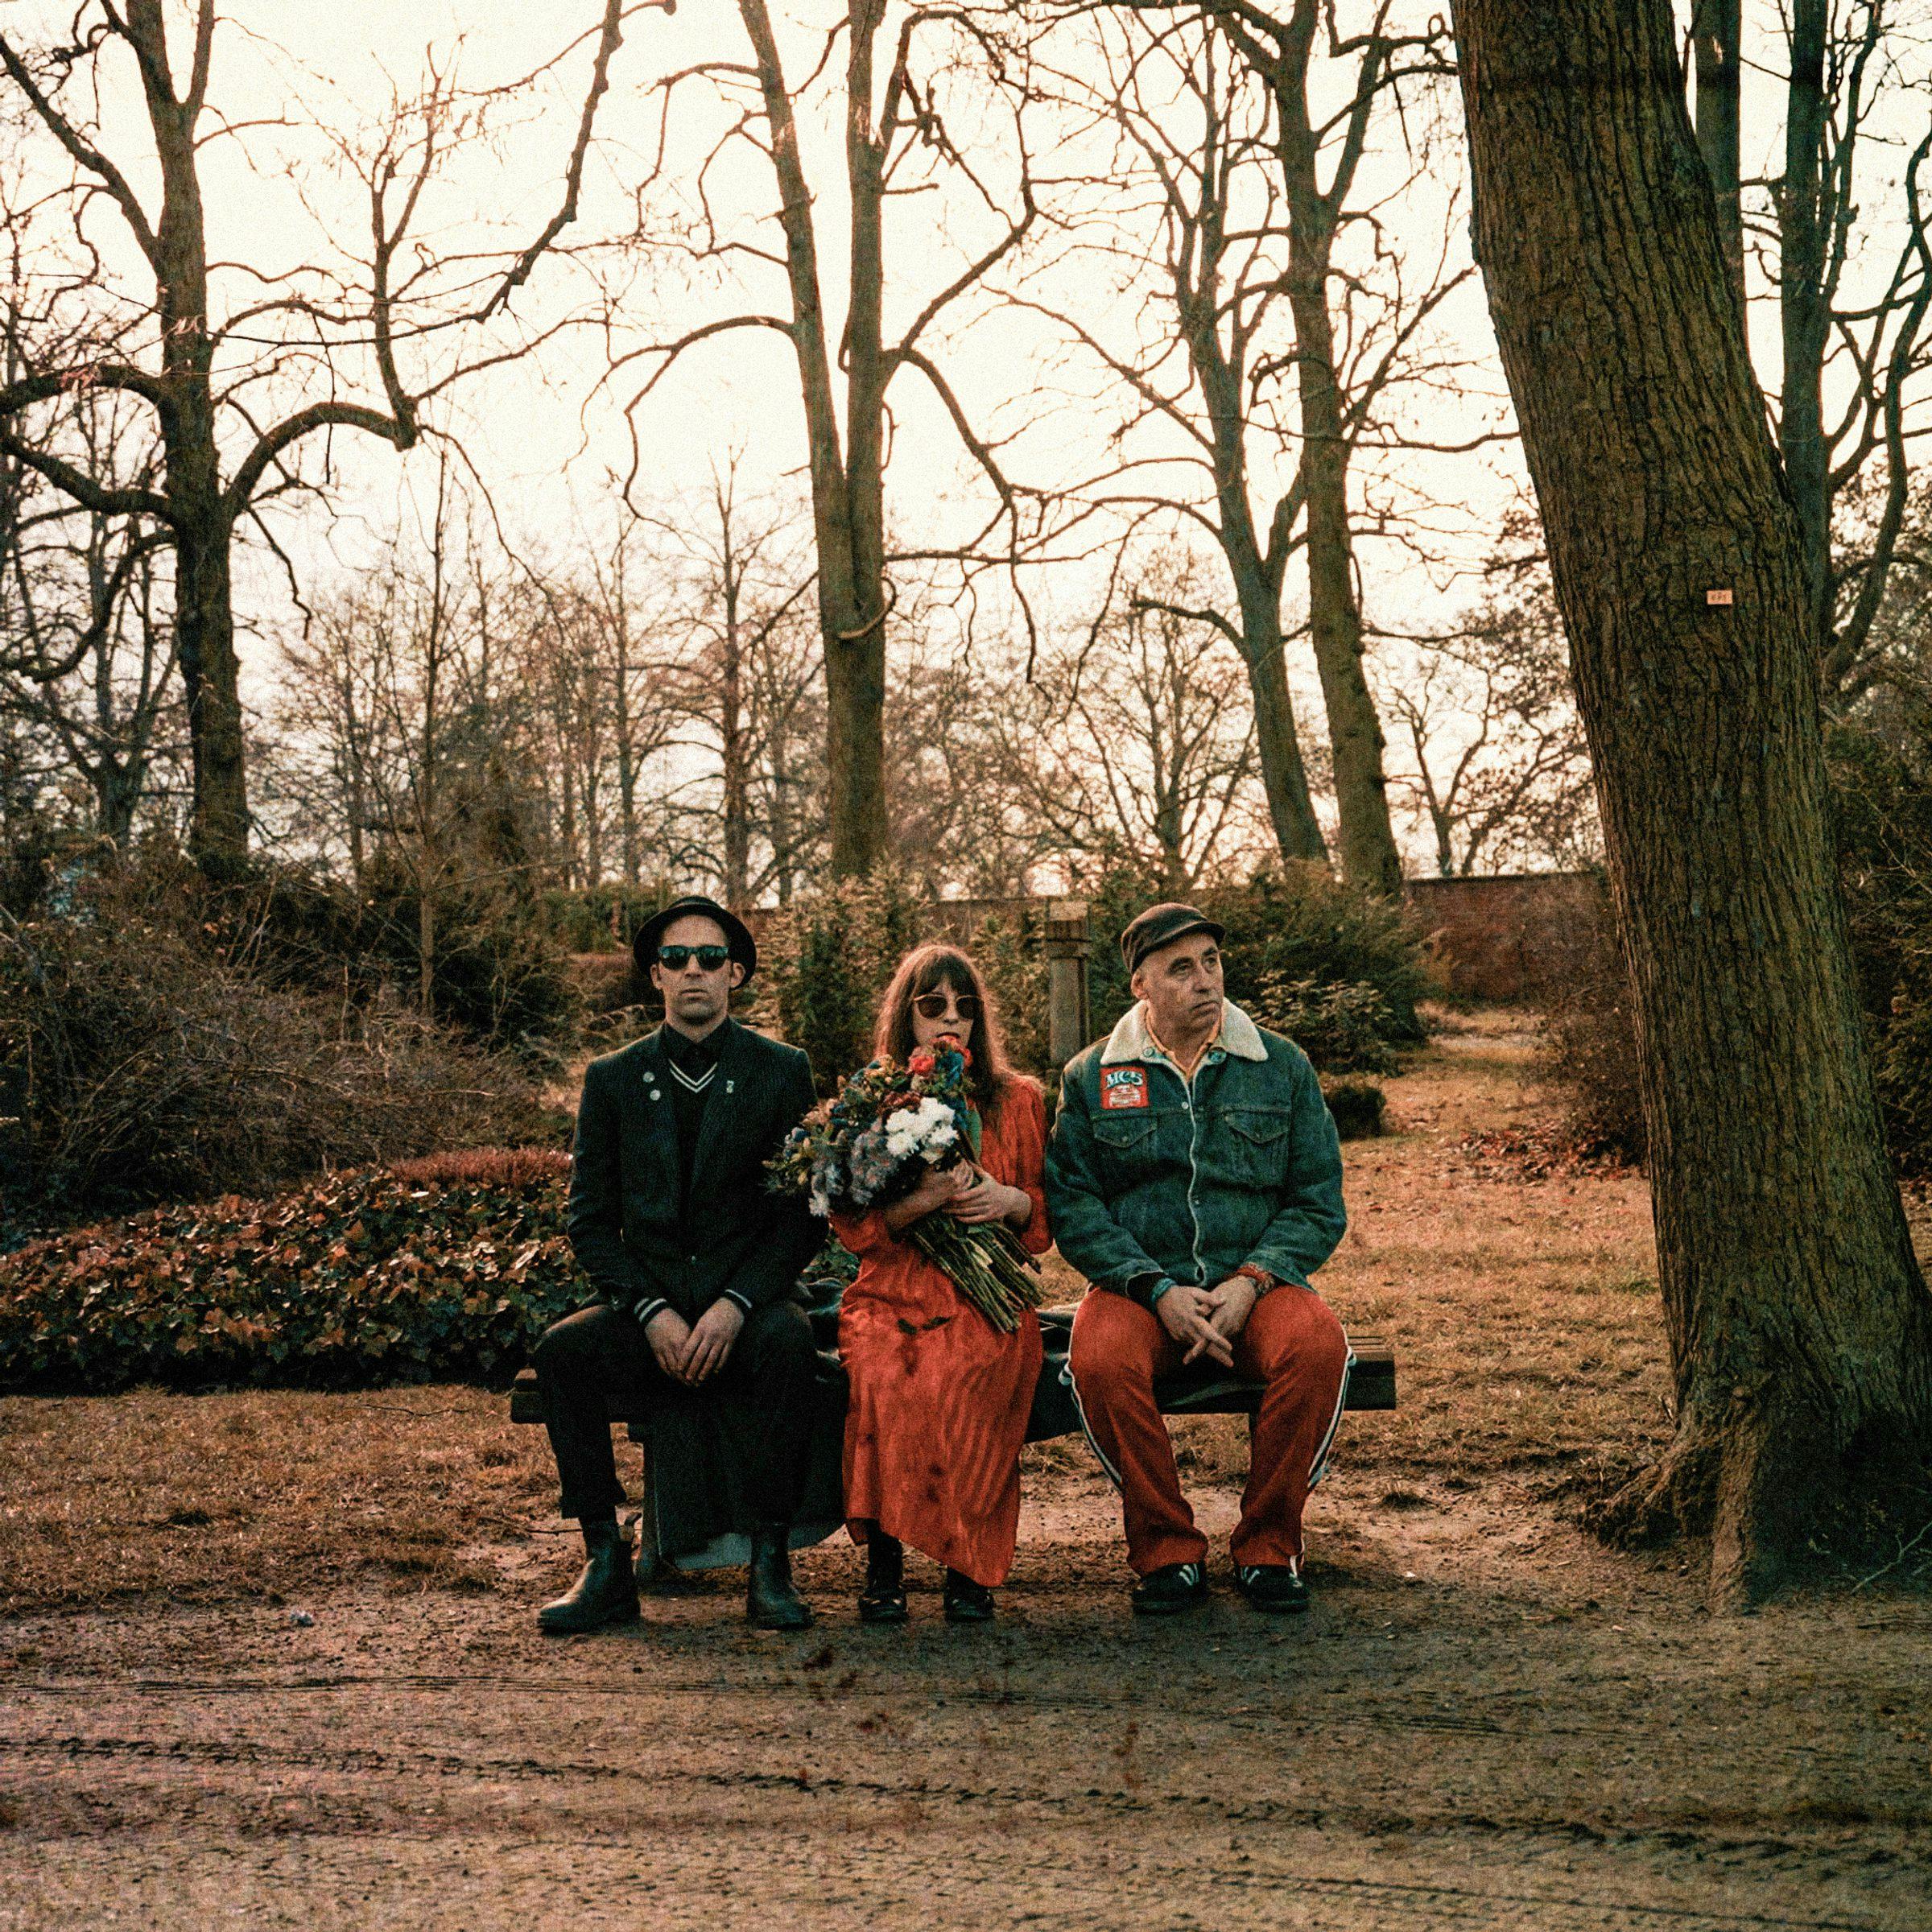 Три участника группы сидят на скамейке в осеннем парке в солнцезащитных очках. Певица держит в руке букет цветов.